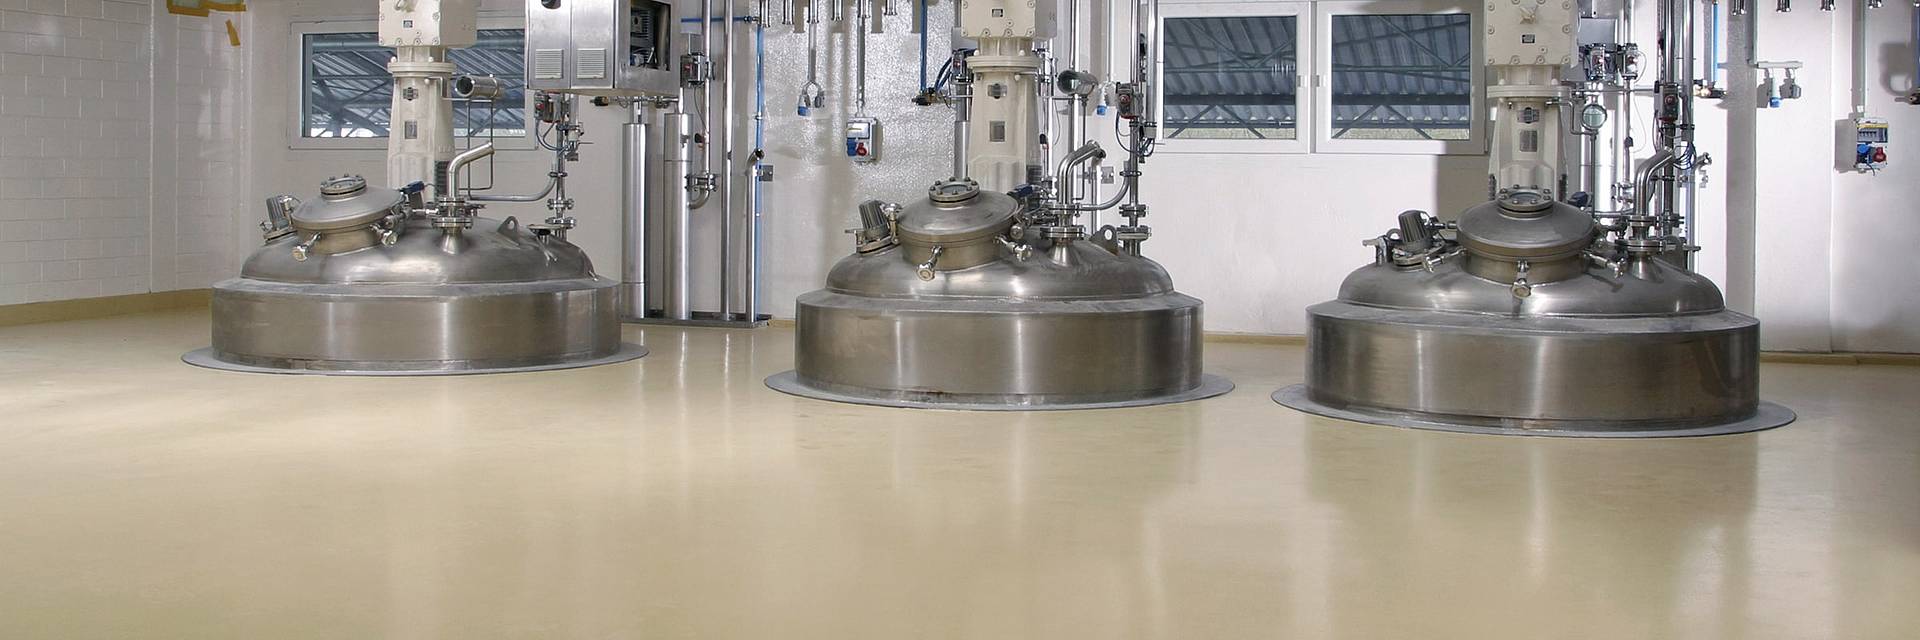 Floor coating pharmaceutical industry